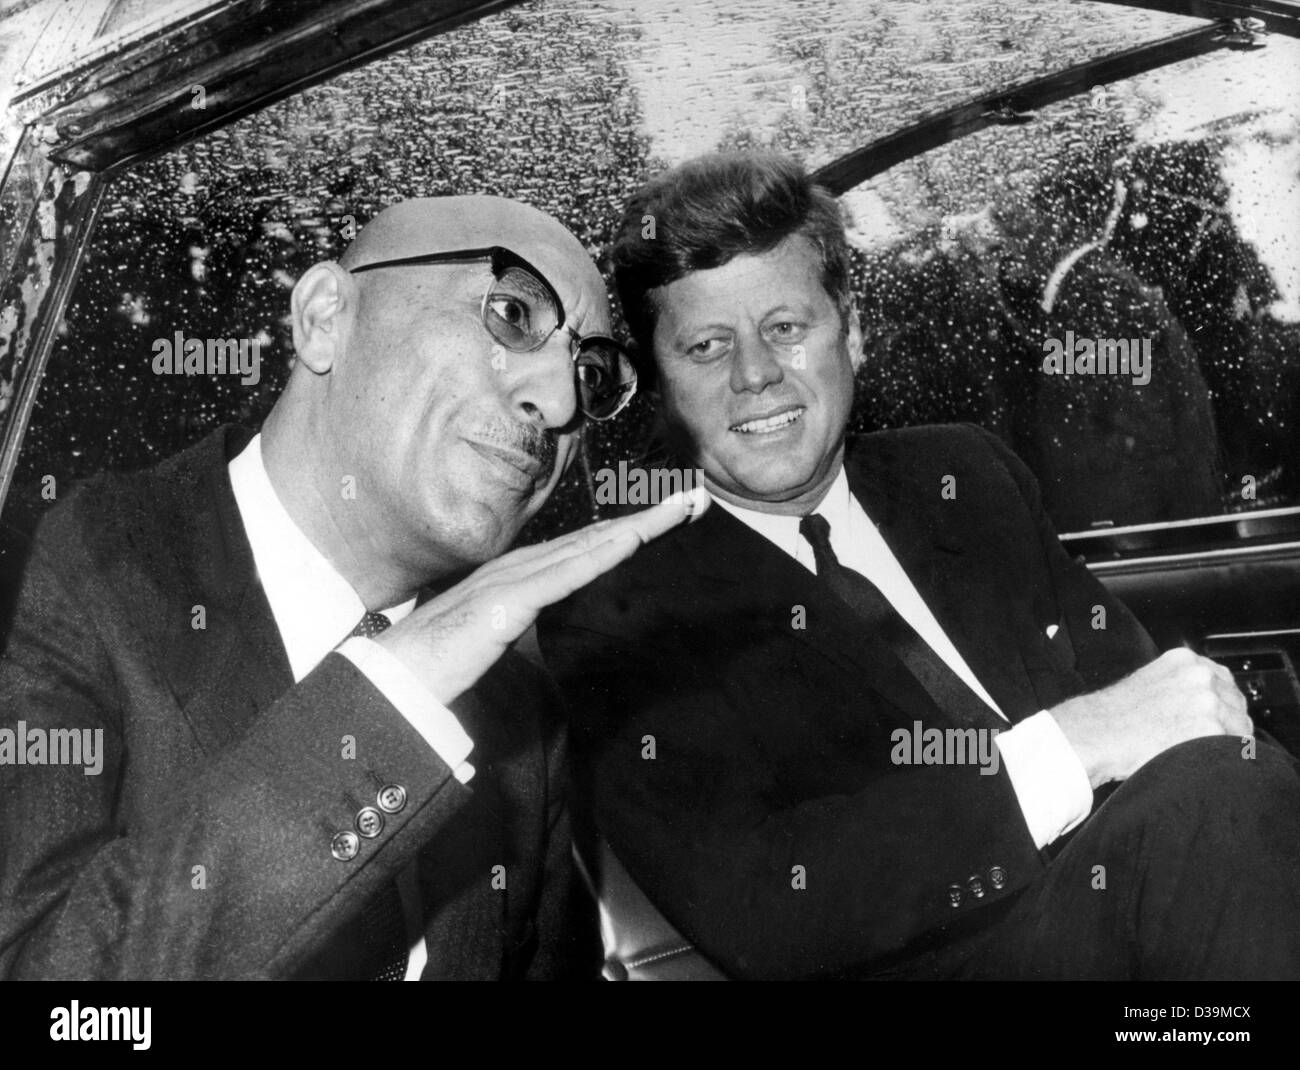 (Dpa file) - US-Presidente John F. Kennedy (R) con il suo ospite, Re Mohammed Zahir Shah (L) in una limousine dopo lo Scià dell'arrivo a Washington D.C. il 6 settembre 1963. Zahir Shah divenne re dell'Afghanistan all'età di 19 anni dopo la morte di suo padre in un assassinio nel 1933. Il 17 luglio 1973 Re Foto Stock